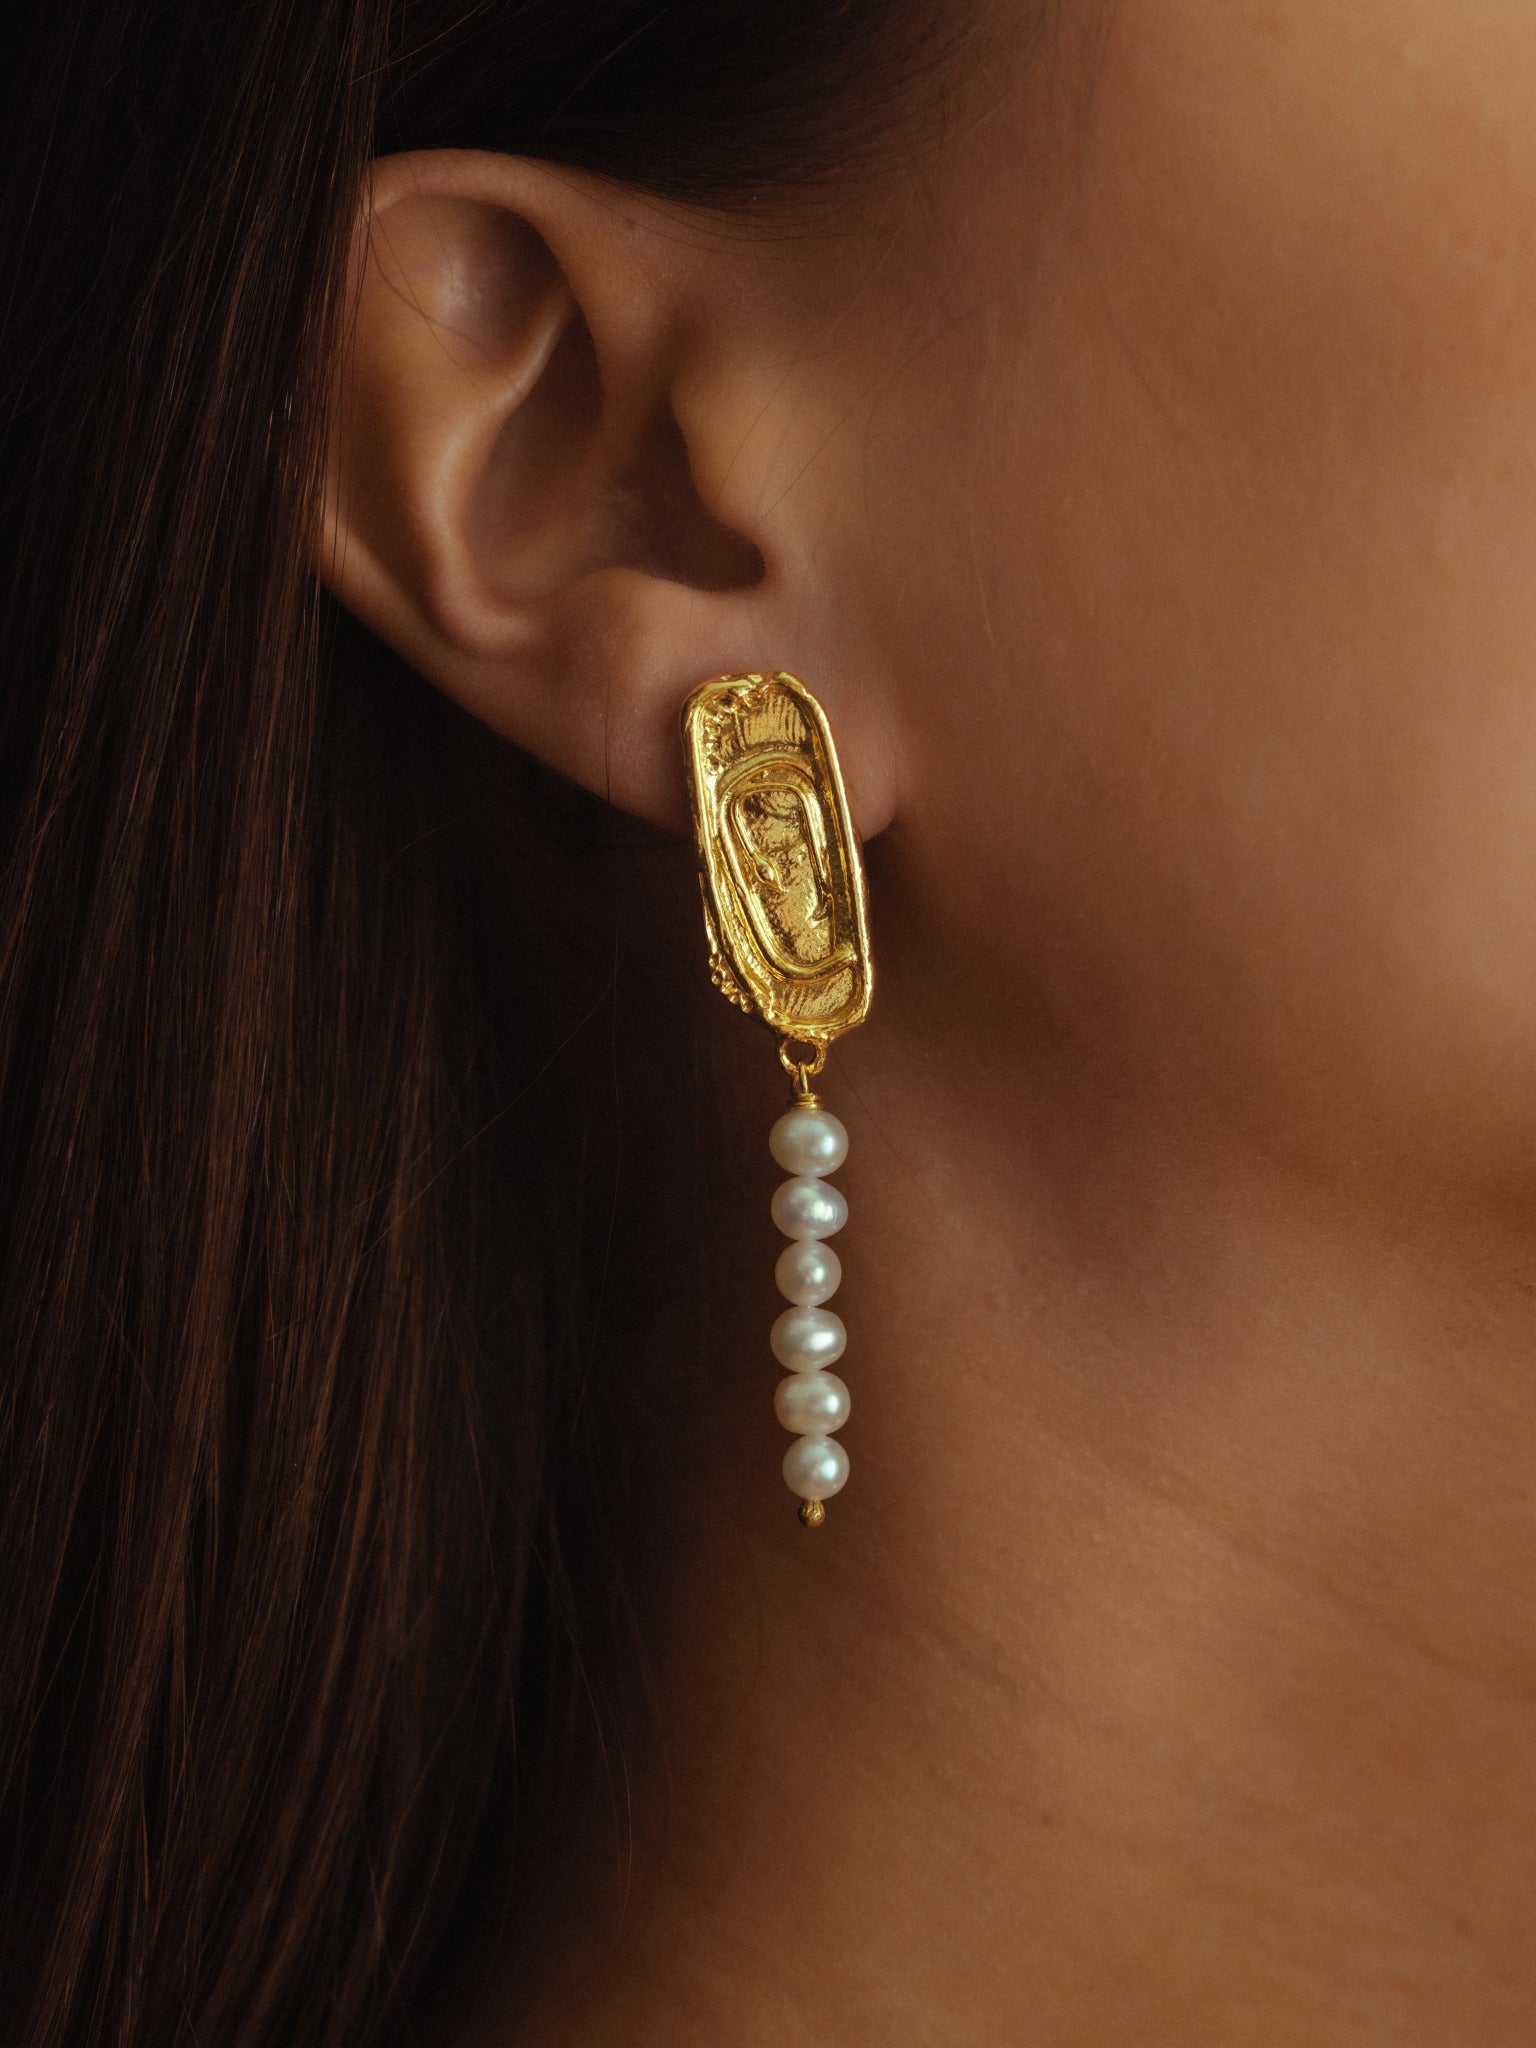 The Little Minoan Earrings